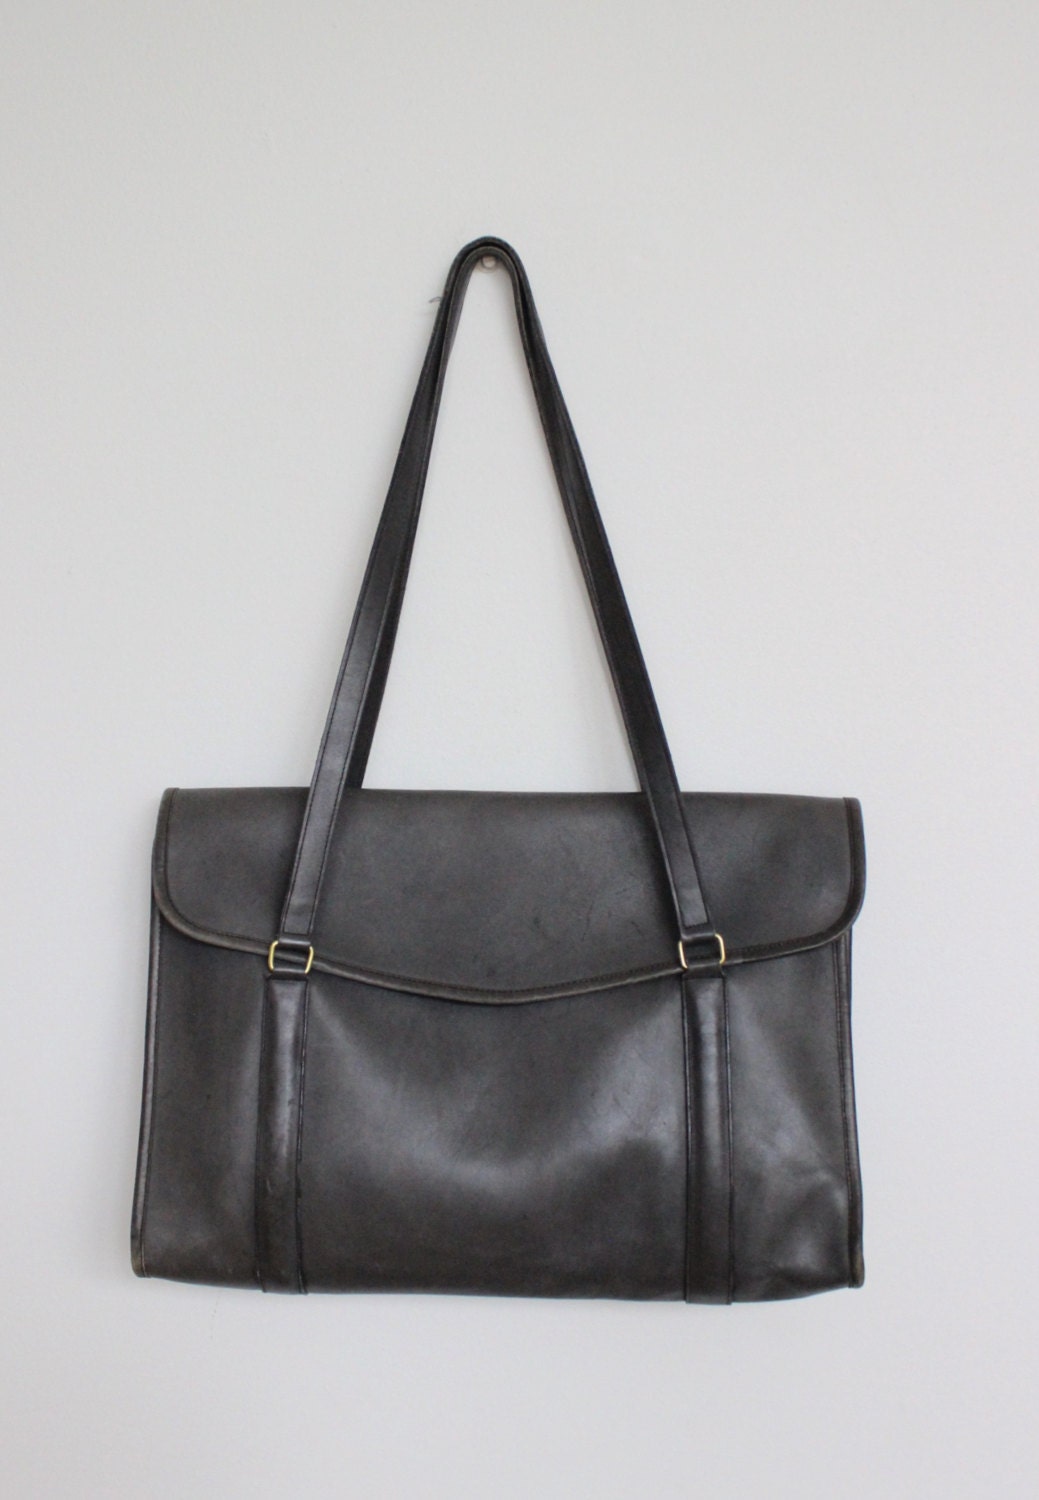 Vintage Coach Bag // Tote Bag NYC RARE // by magnoliavintageco